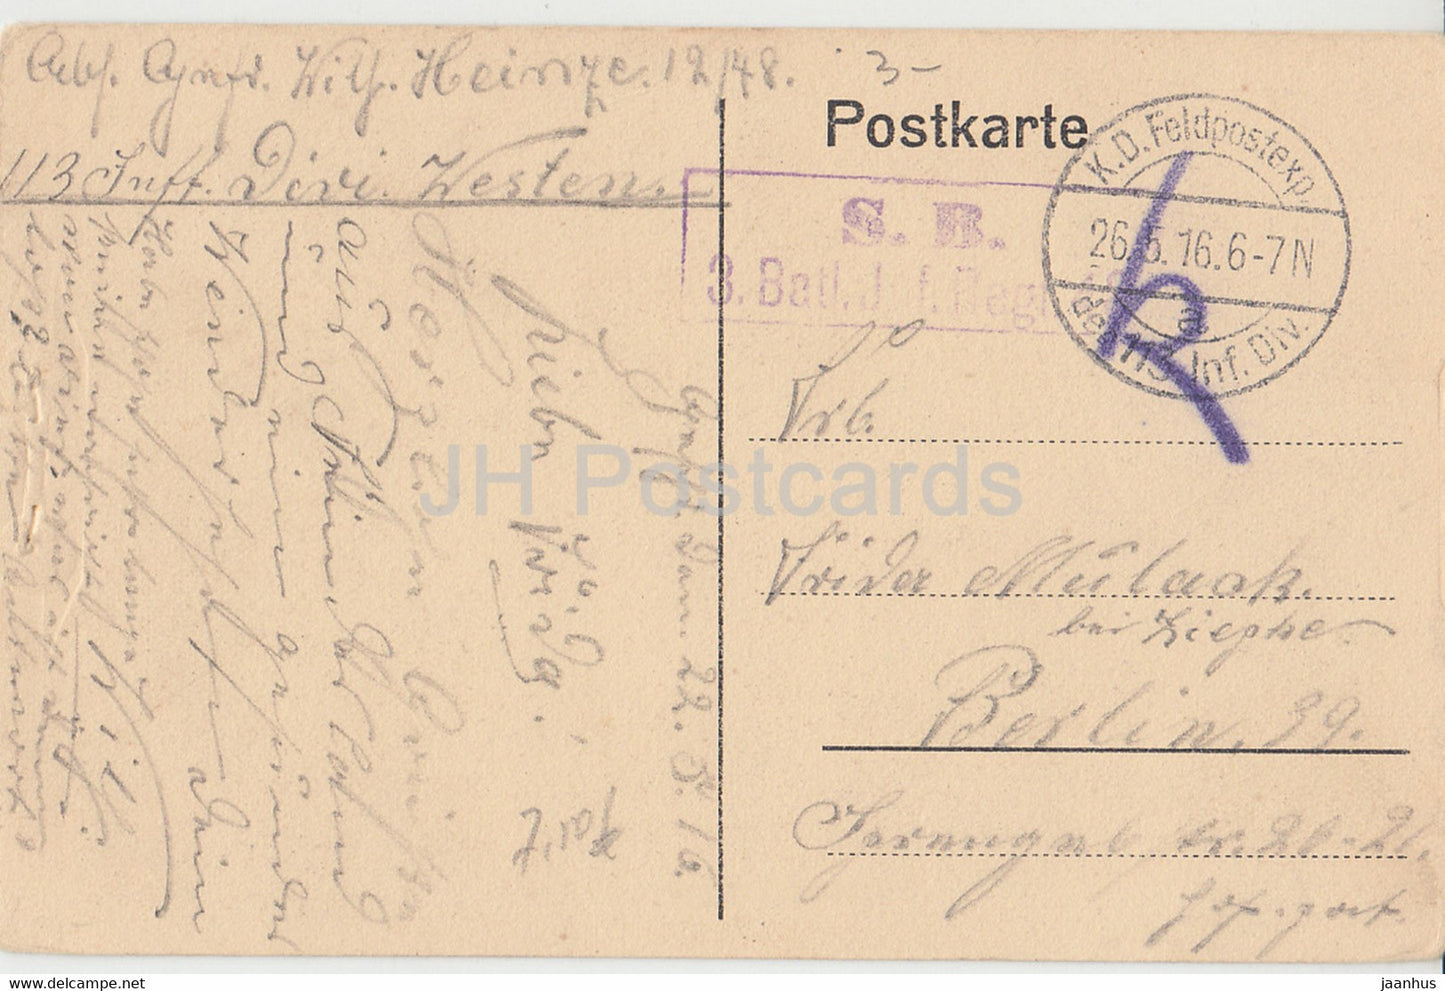 Couchy le Chateau - Zimmer von Gabriele d'Estrees - Schloss - Feldpost - alte Postkarte - 1916 - Frankreich - gebraucht